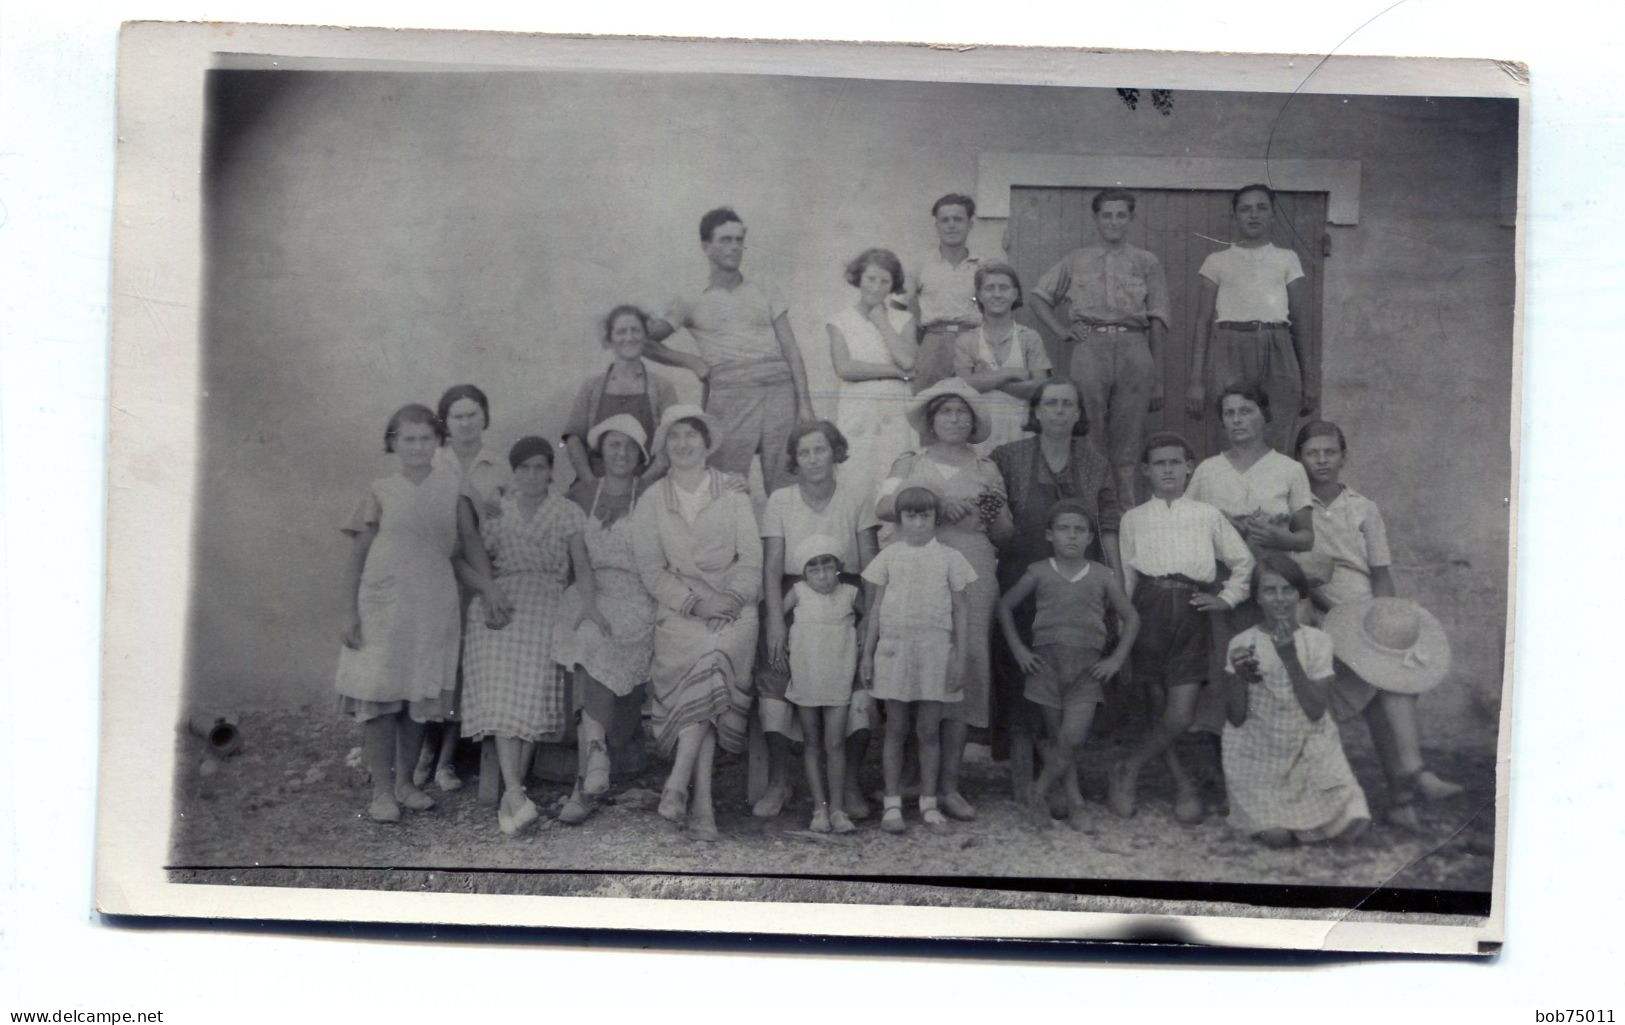 Carte Photo D'une Famille élégante Posant Dans La Cour De Leurs Maison Vers 1930 - Anonymous Persons